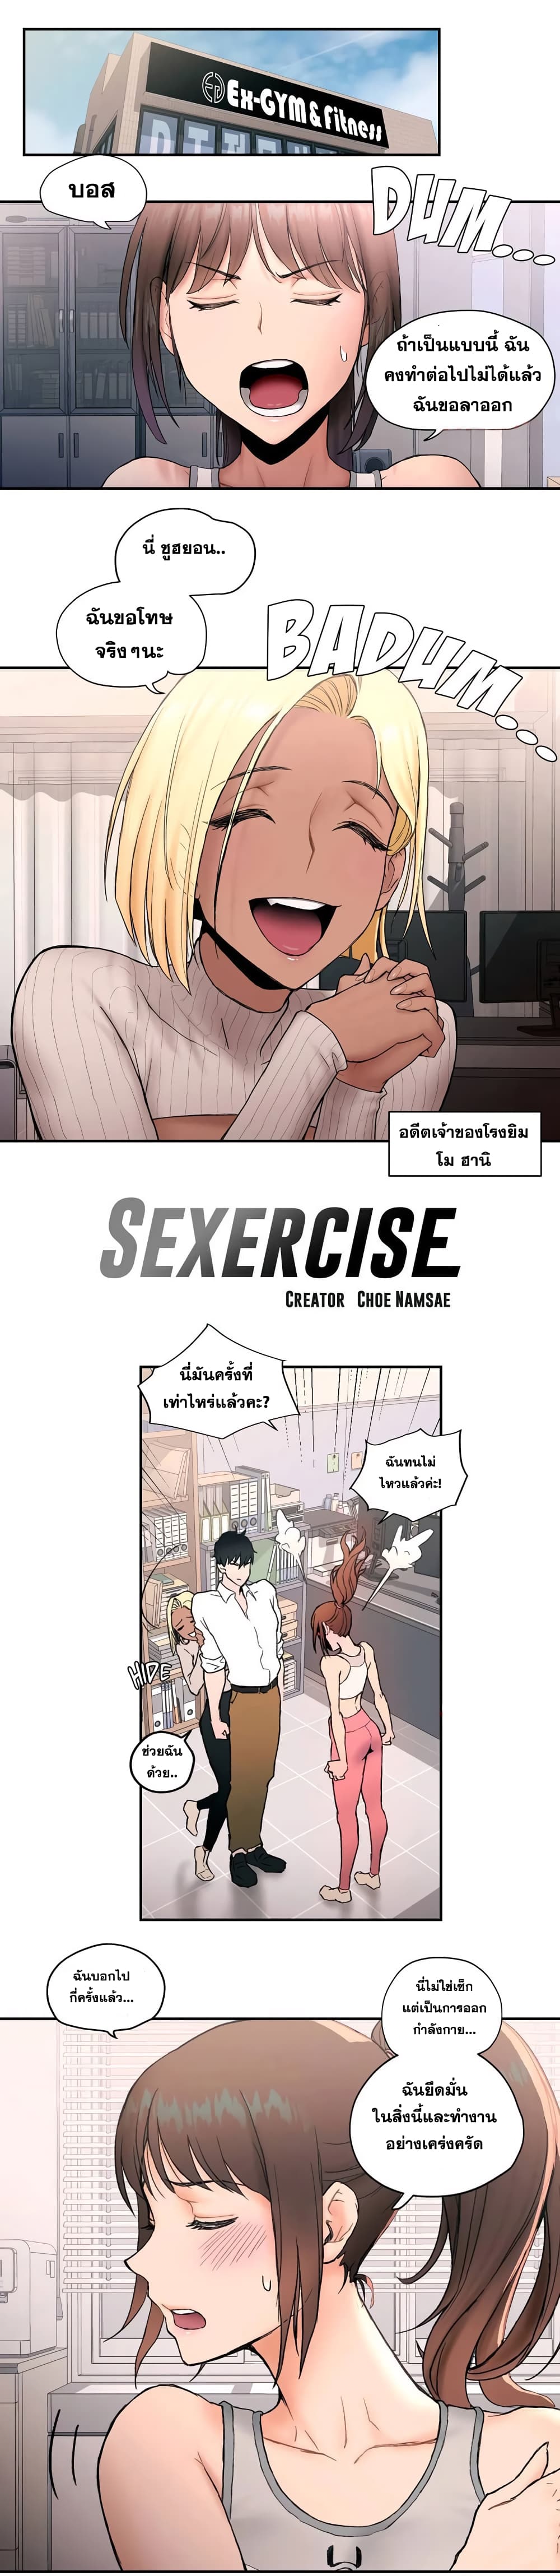 Sexercise 6 01